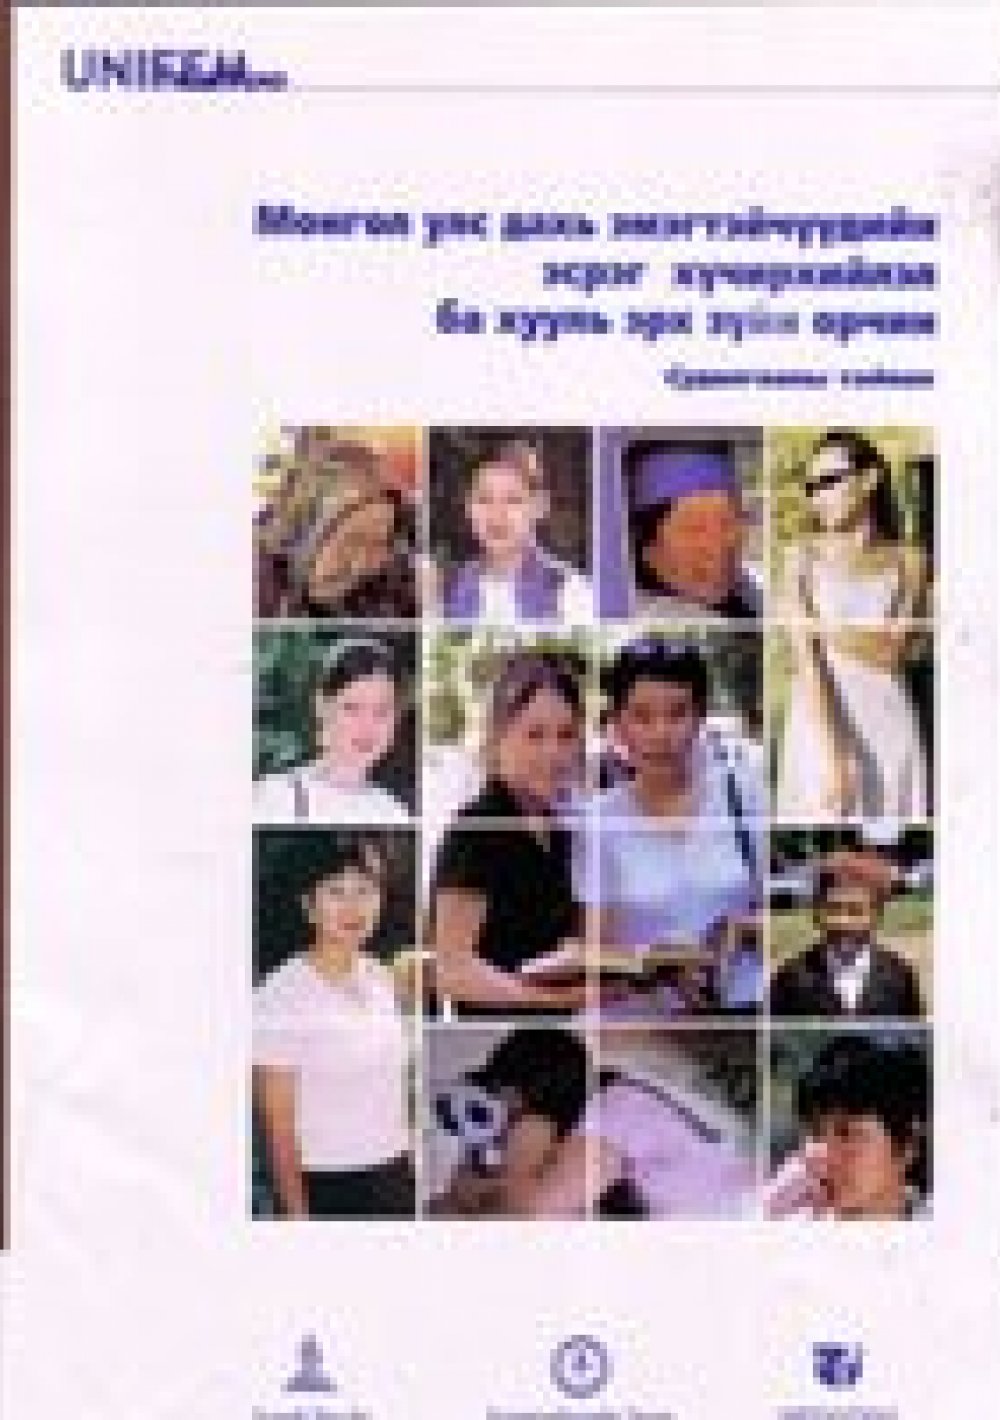 Монгол улс дахь эмэгтэйчүүдийн эсрэг хүчирхийлэл ба хууль эрх зүйн орчин - Судалгааны тайлан